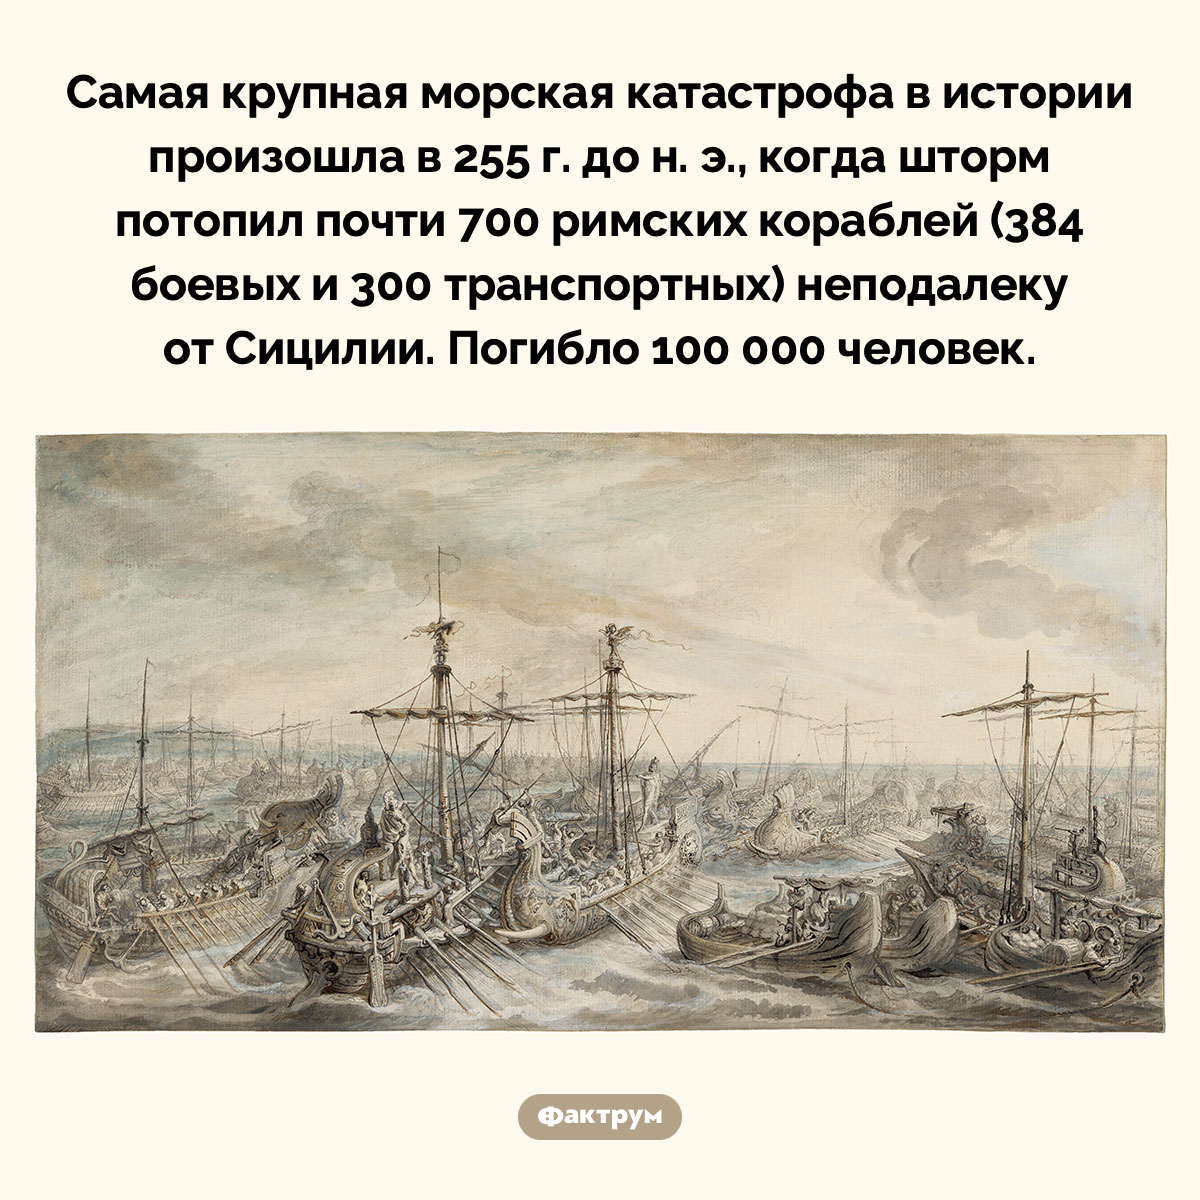 Самая крупная морская катастрофа в истории. Самая крупная морская катастрофа в истории произошла в 255 г. до н. э., когда шторм потопил почти 700 римских кораблей (384 боевых и 300 транспортных) неподалеку от Сицилии. Погибло 100 000 человек.